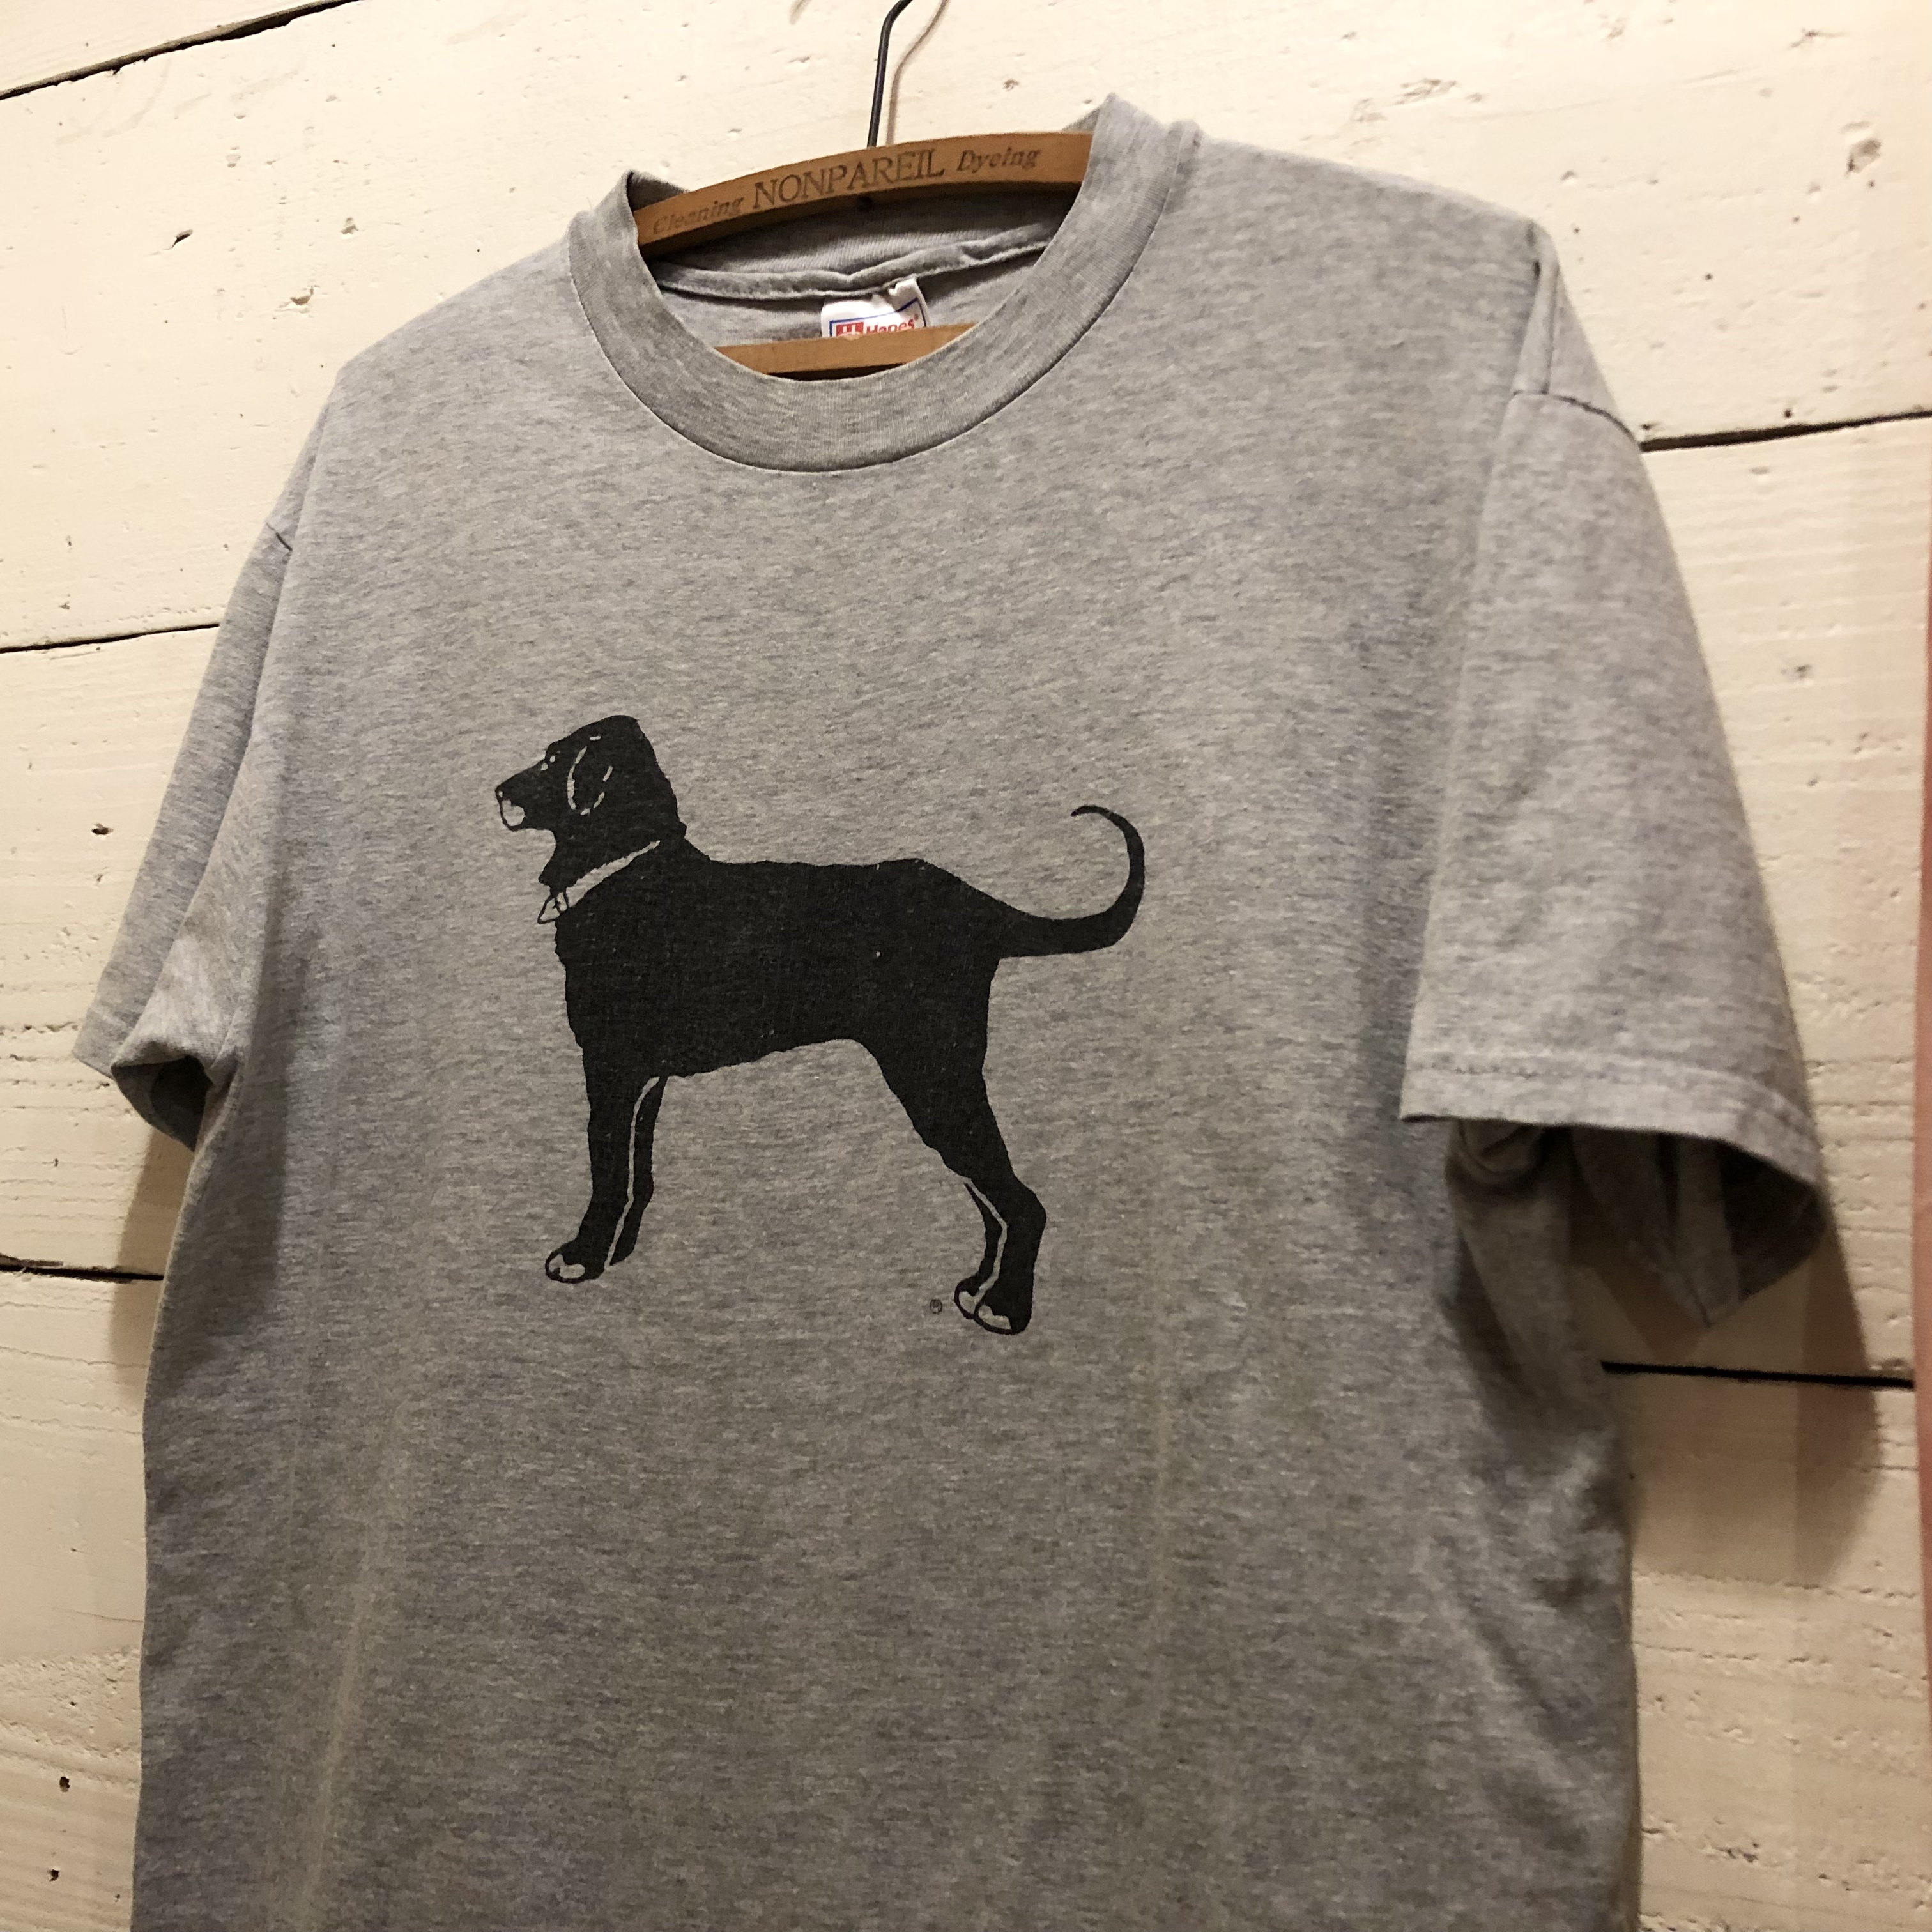 THE BLACK DOG Tシャツ　90's オールド